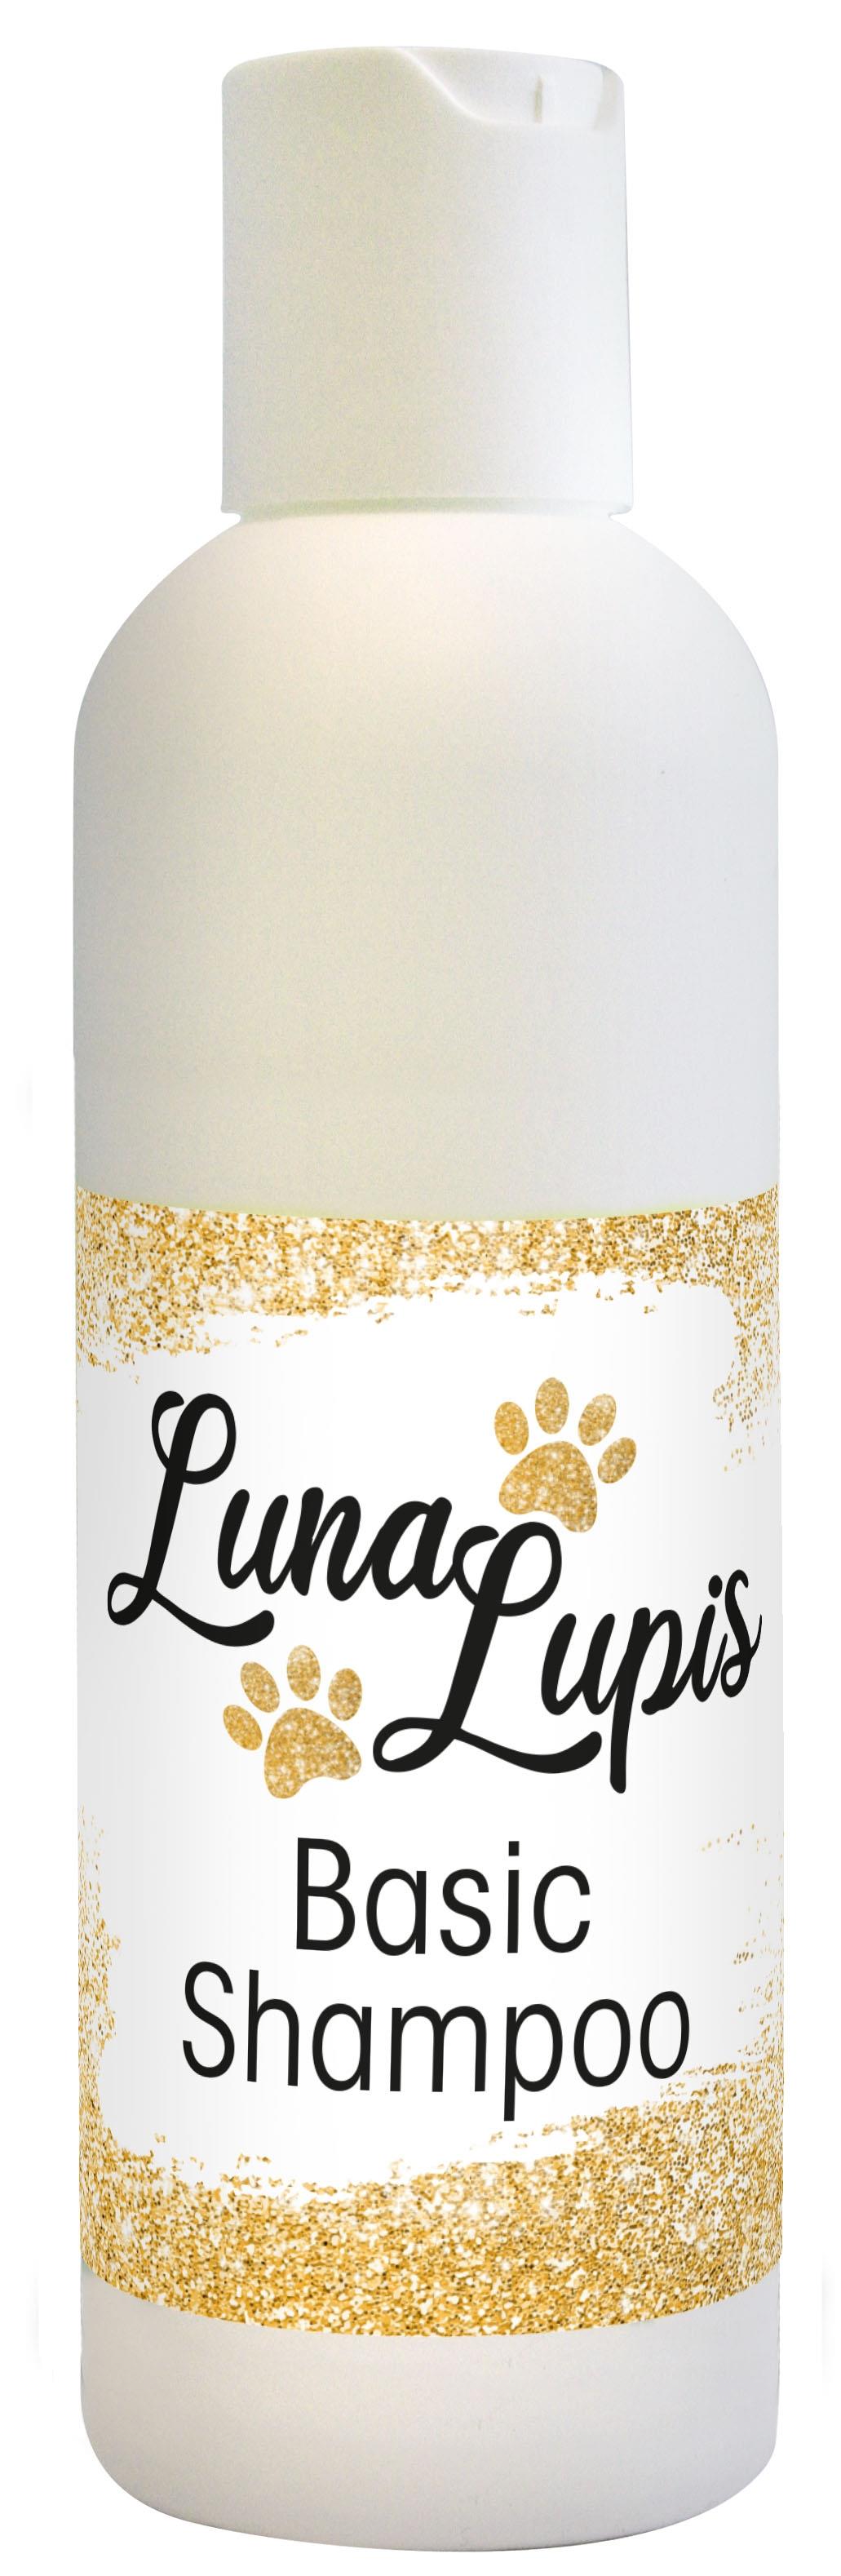 LunaLupis Basic Shampoo